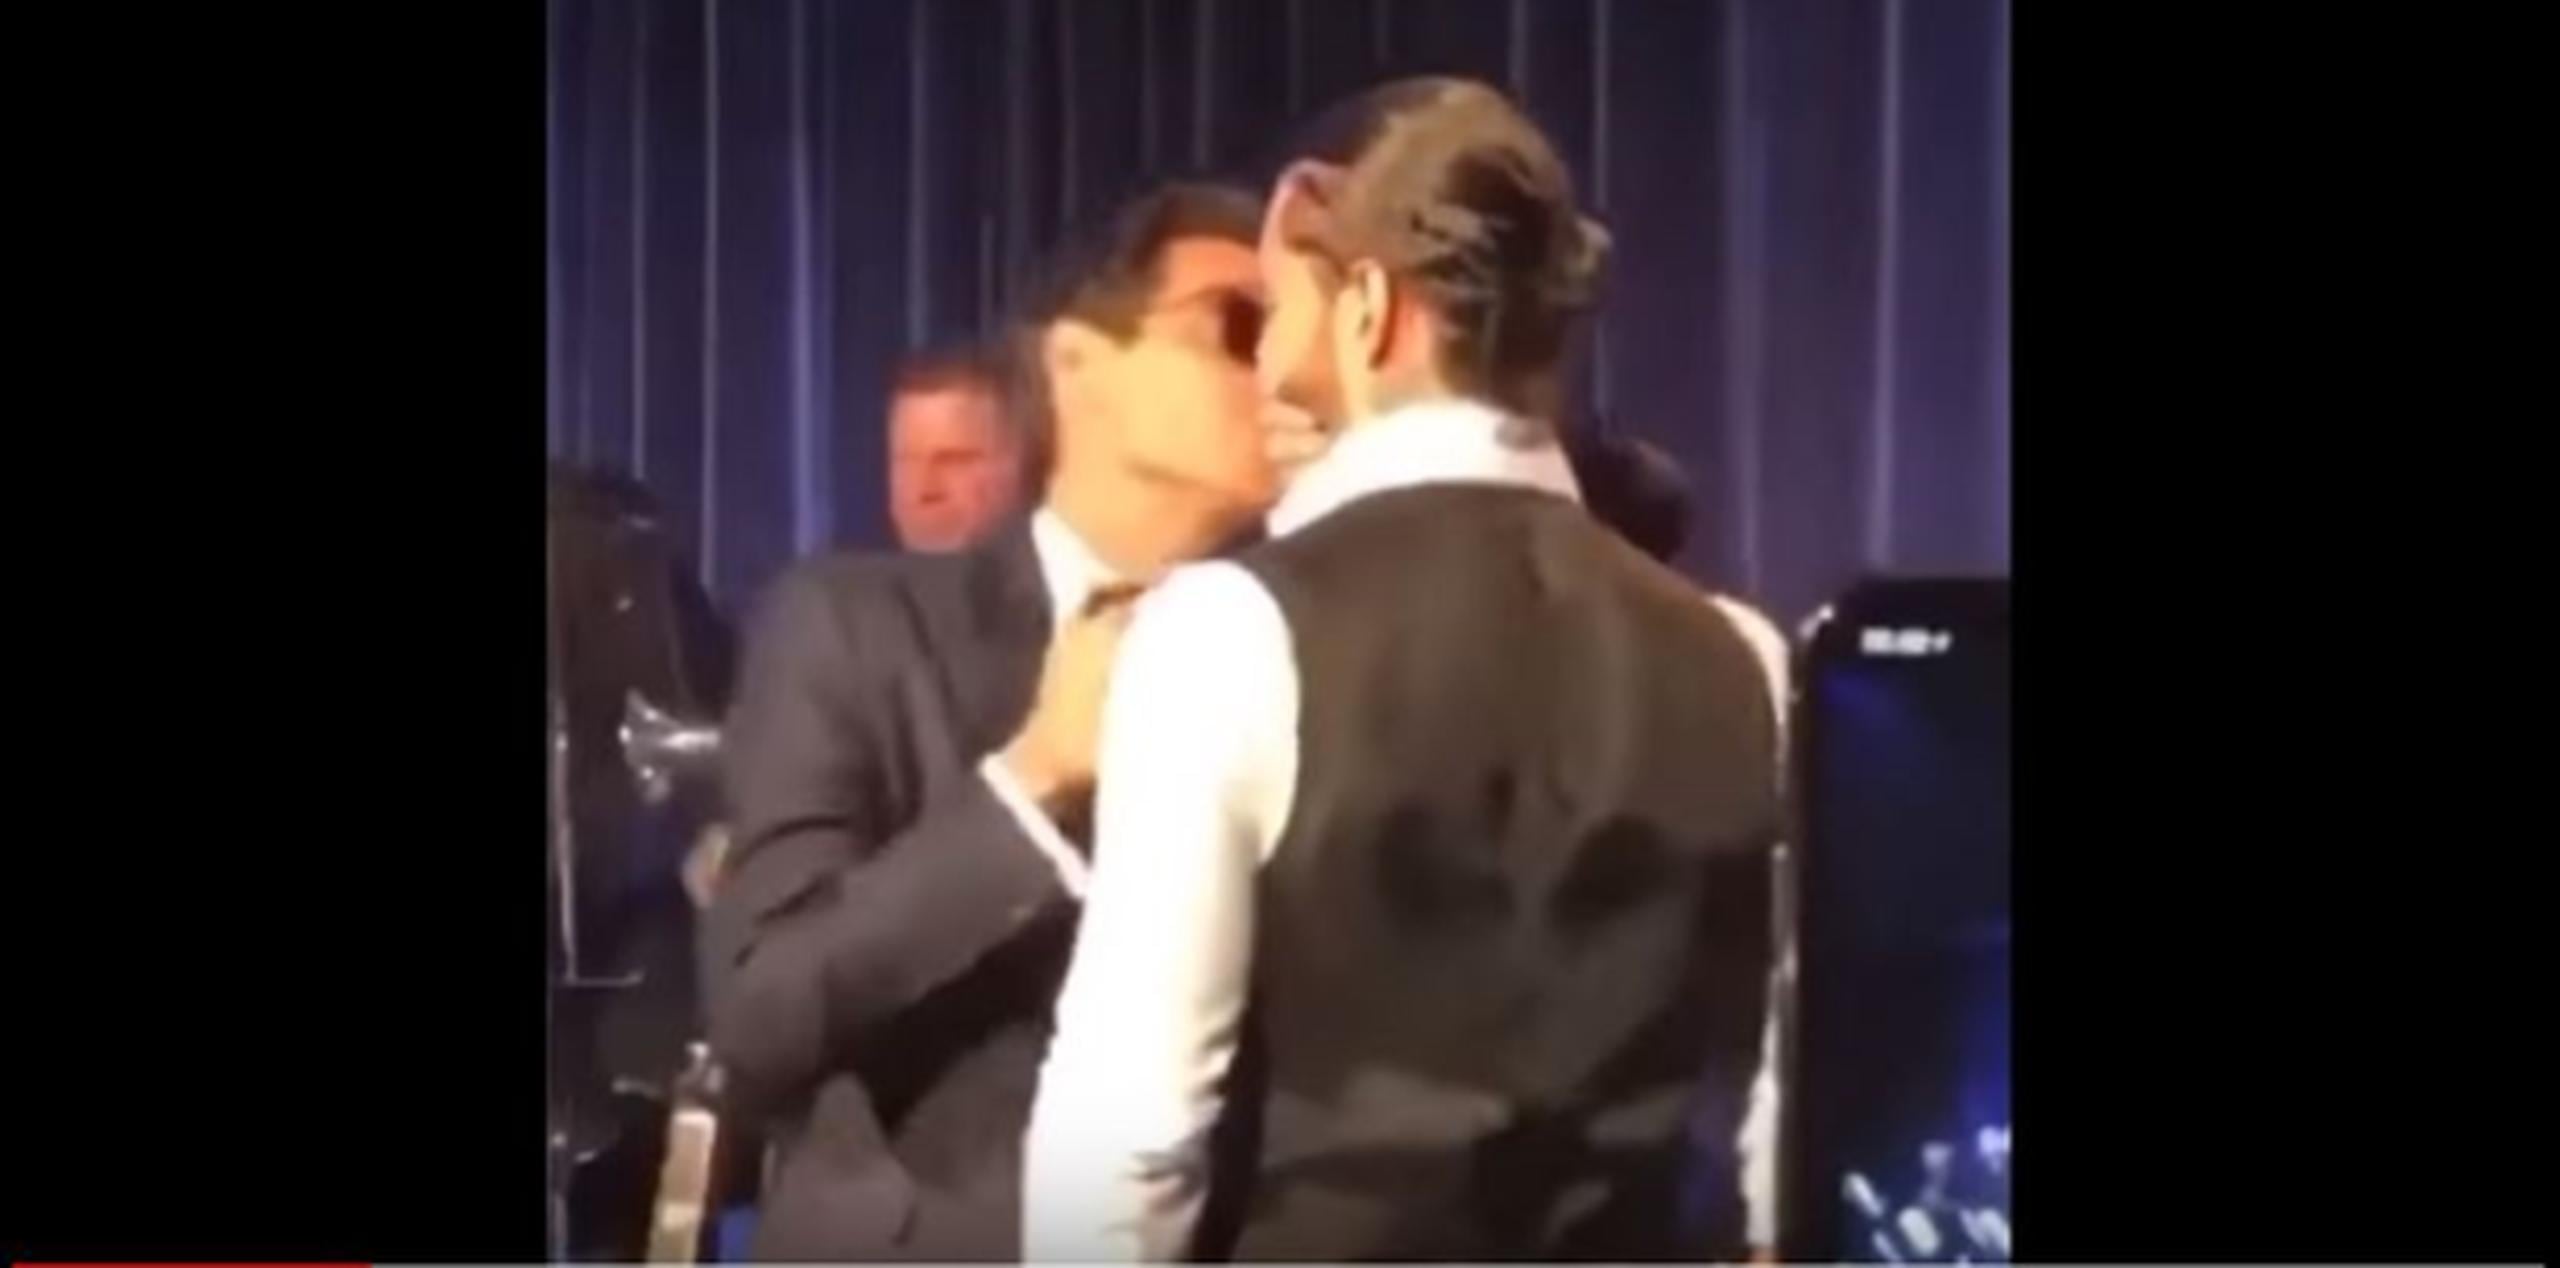 El polémico momento se dio cuando Marc Anthony puso su mano en la boca de Maluma, se acercó y lo besó, fue una "simulación de beso en la boca". (Captura)